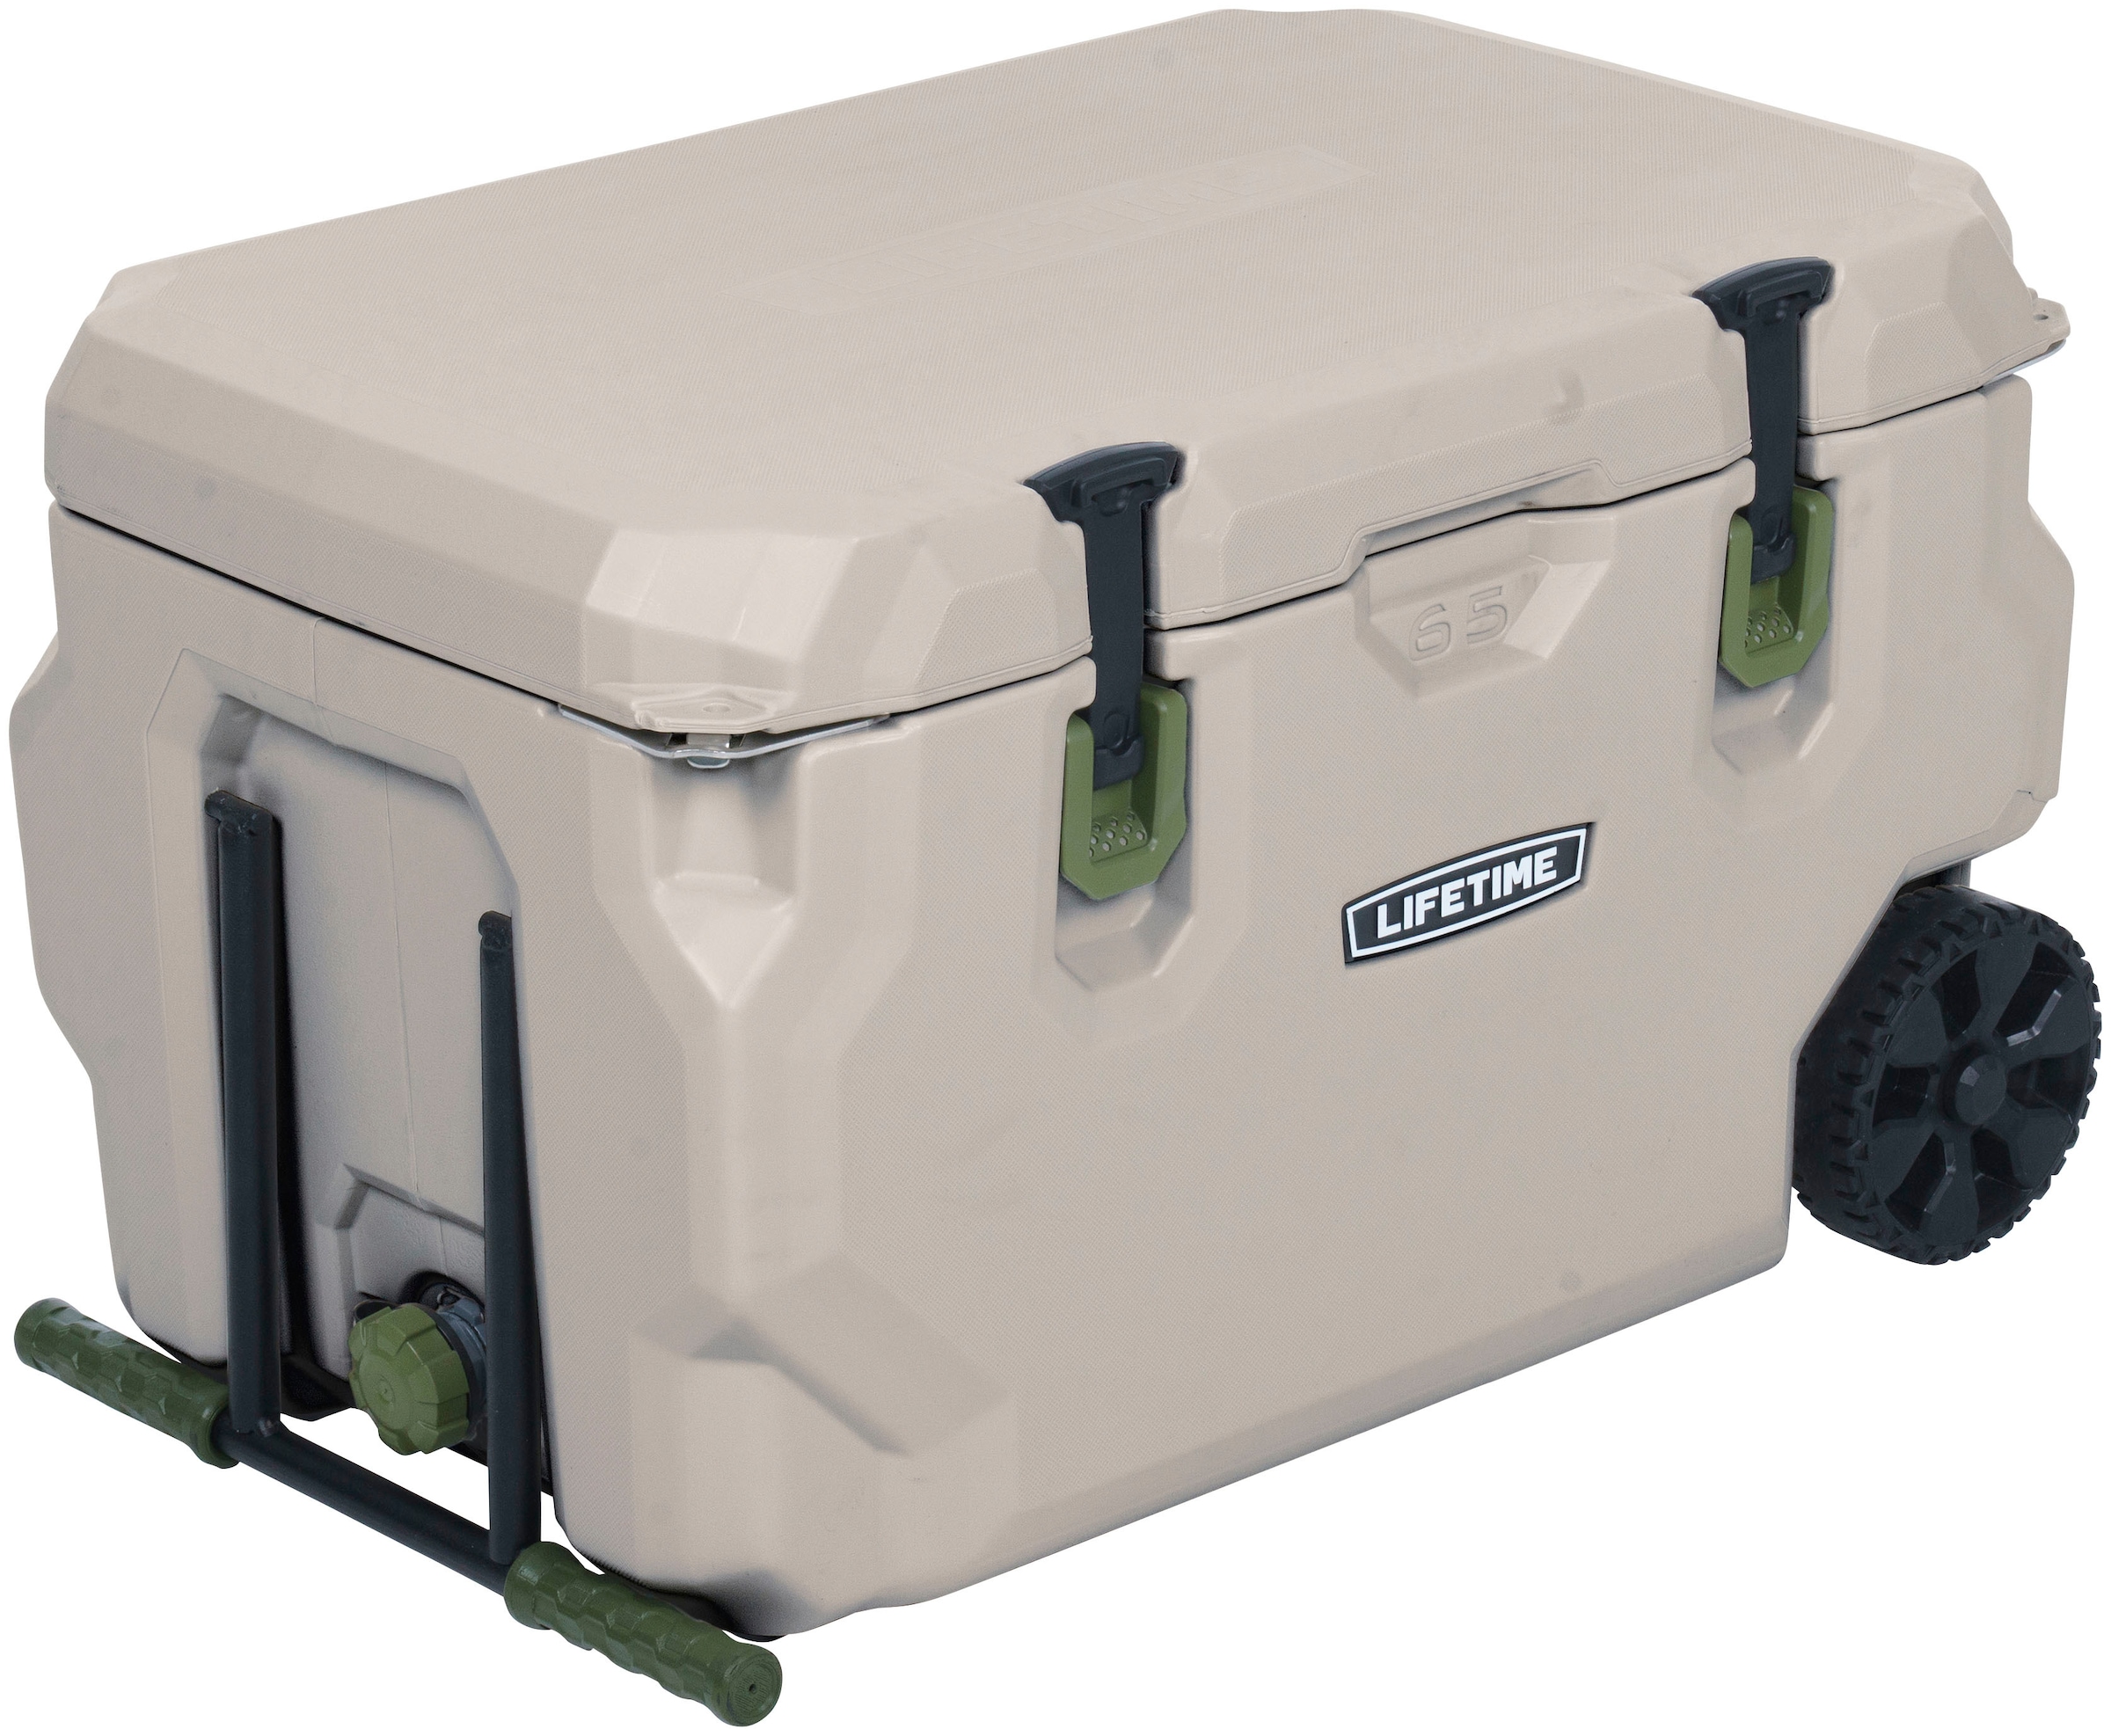 Lifetime Kühlbox »Kunststoff Kühlbox Premium 61,5 Liter«, Beige, 72x46x45 cm